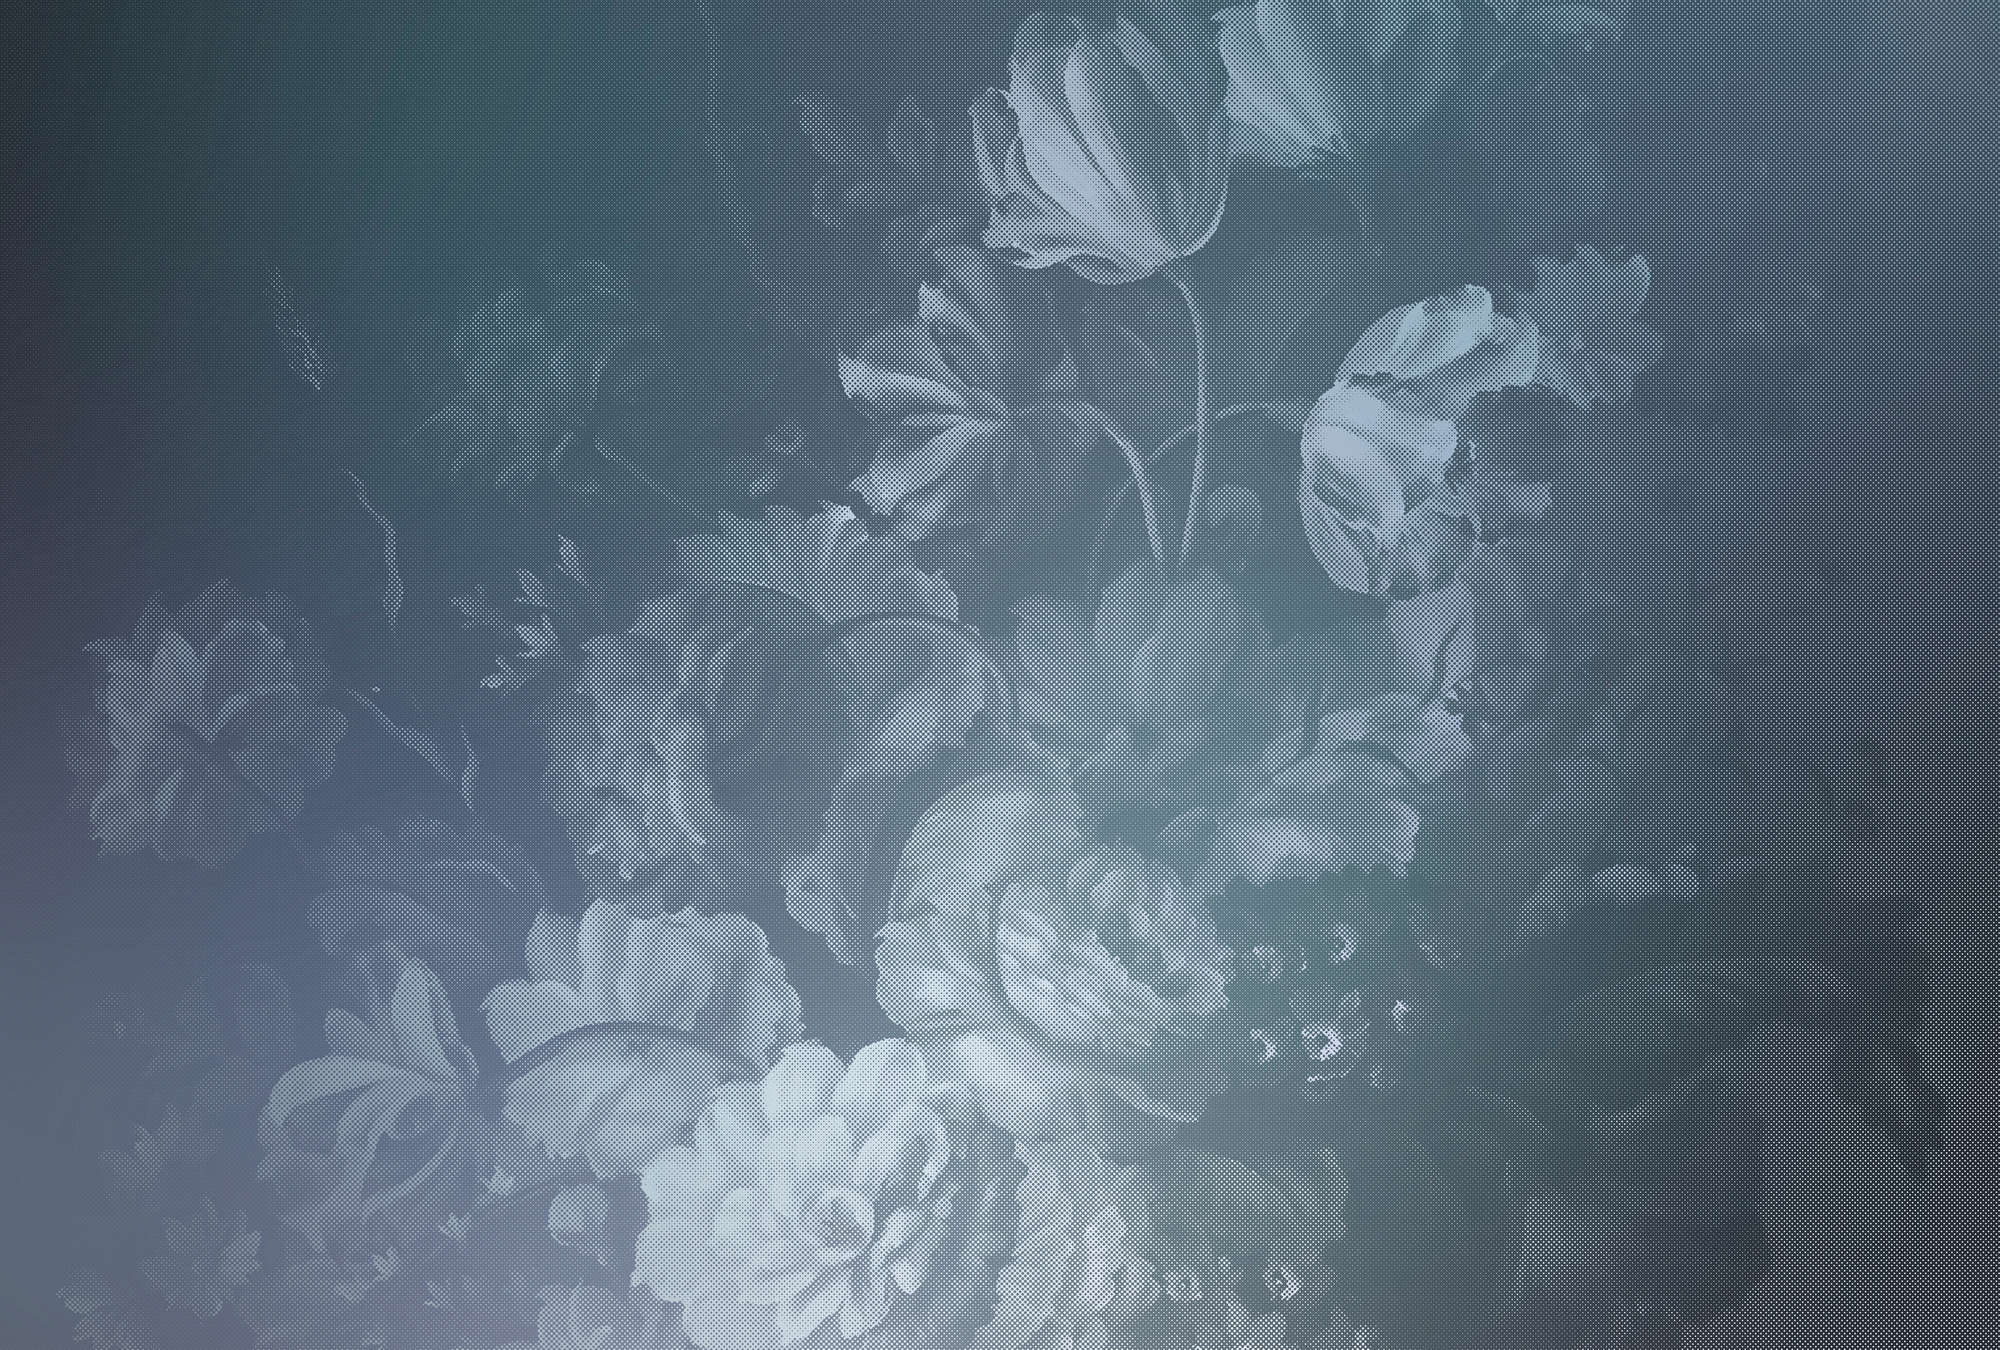             Pastello olandese 1 - Fotomurali con motivo di rose artistiche - Blu | Pile liscio premium
        